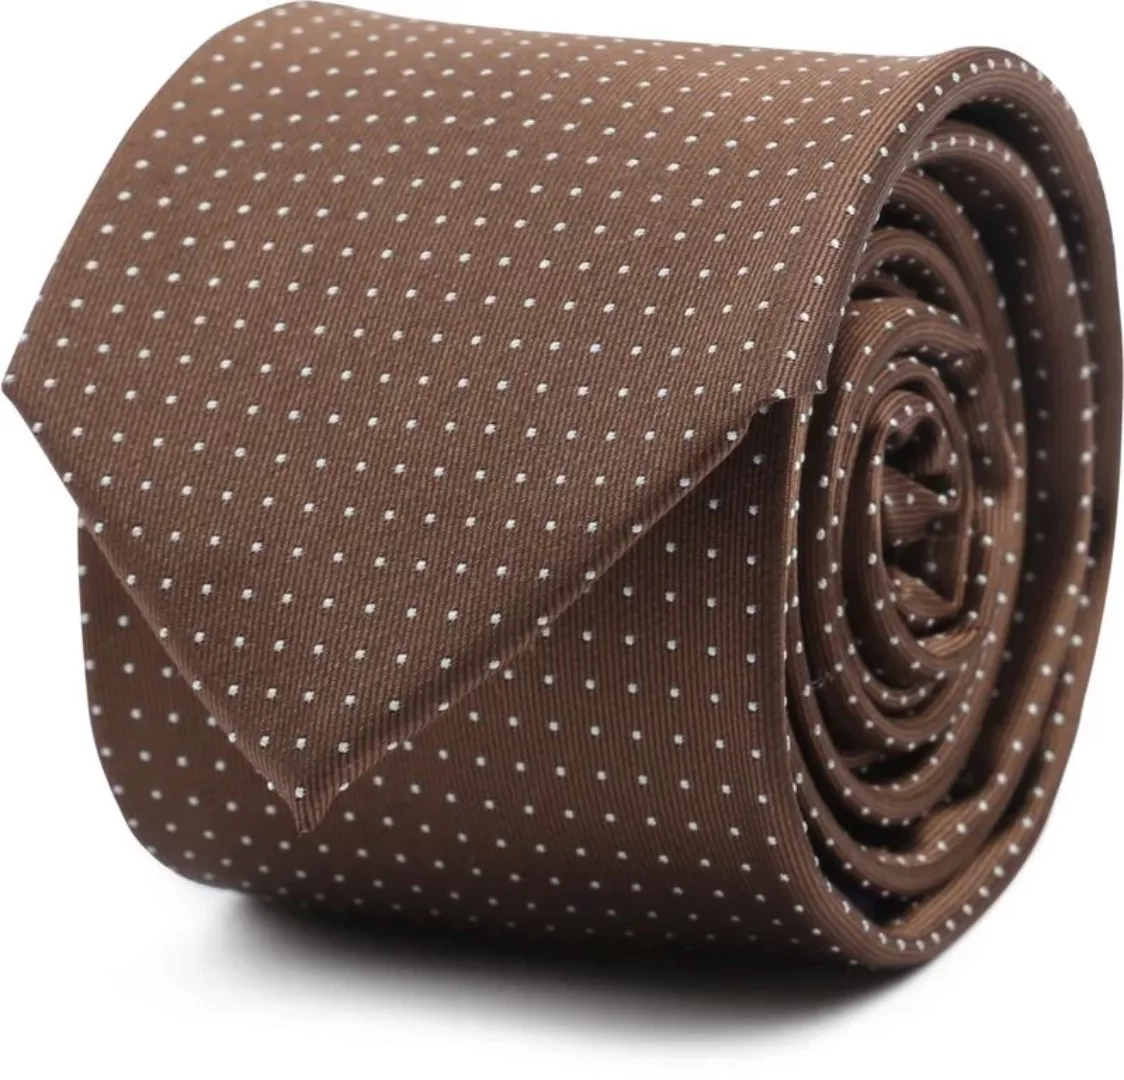 Suitable Krawatte Seide Punkte Braun - günstig online kaufen